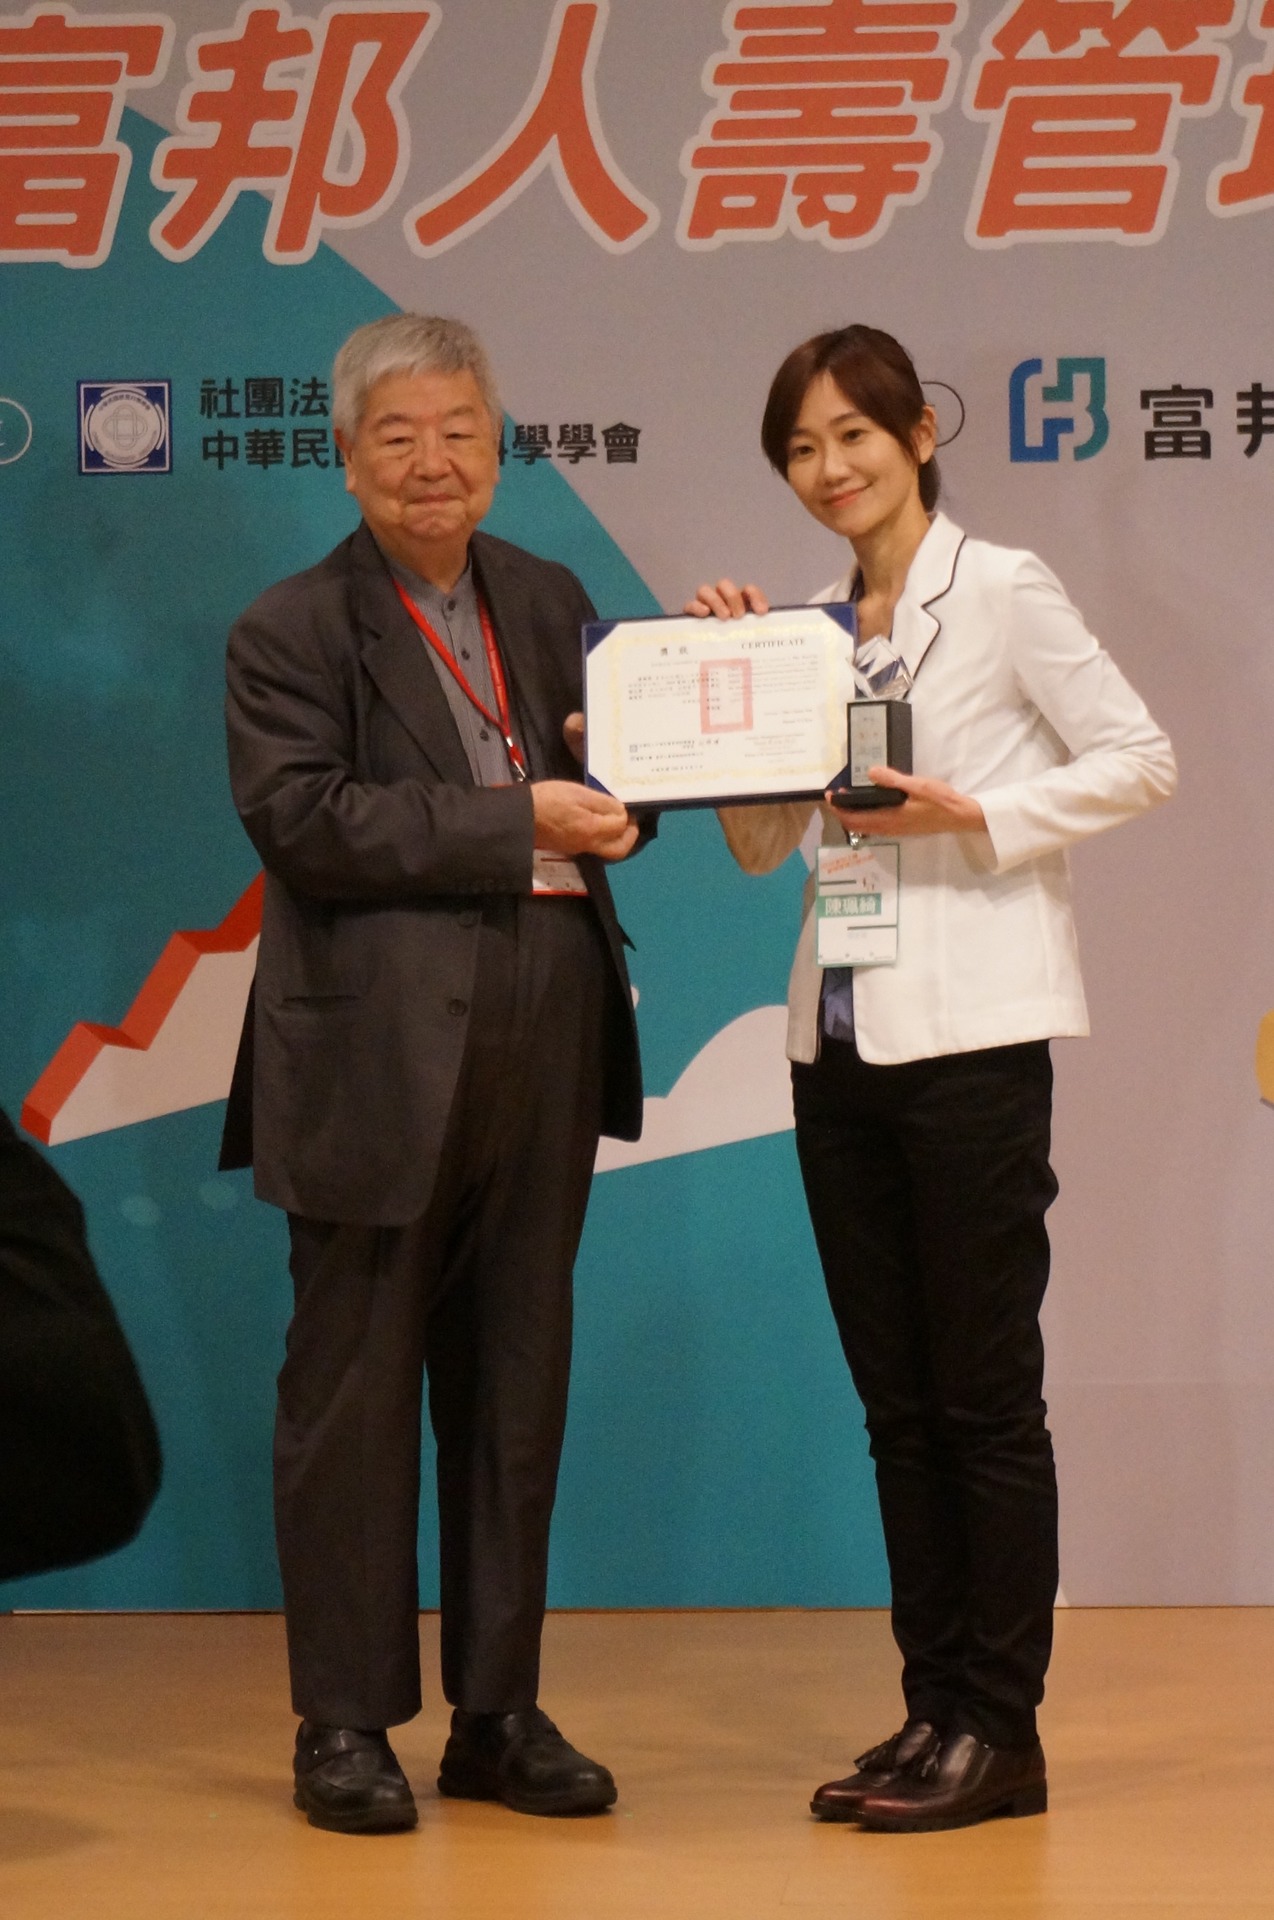 企管系博士生陳珮綺(右)獲得「博士組」最佳實務應用獎、佳作